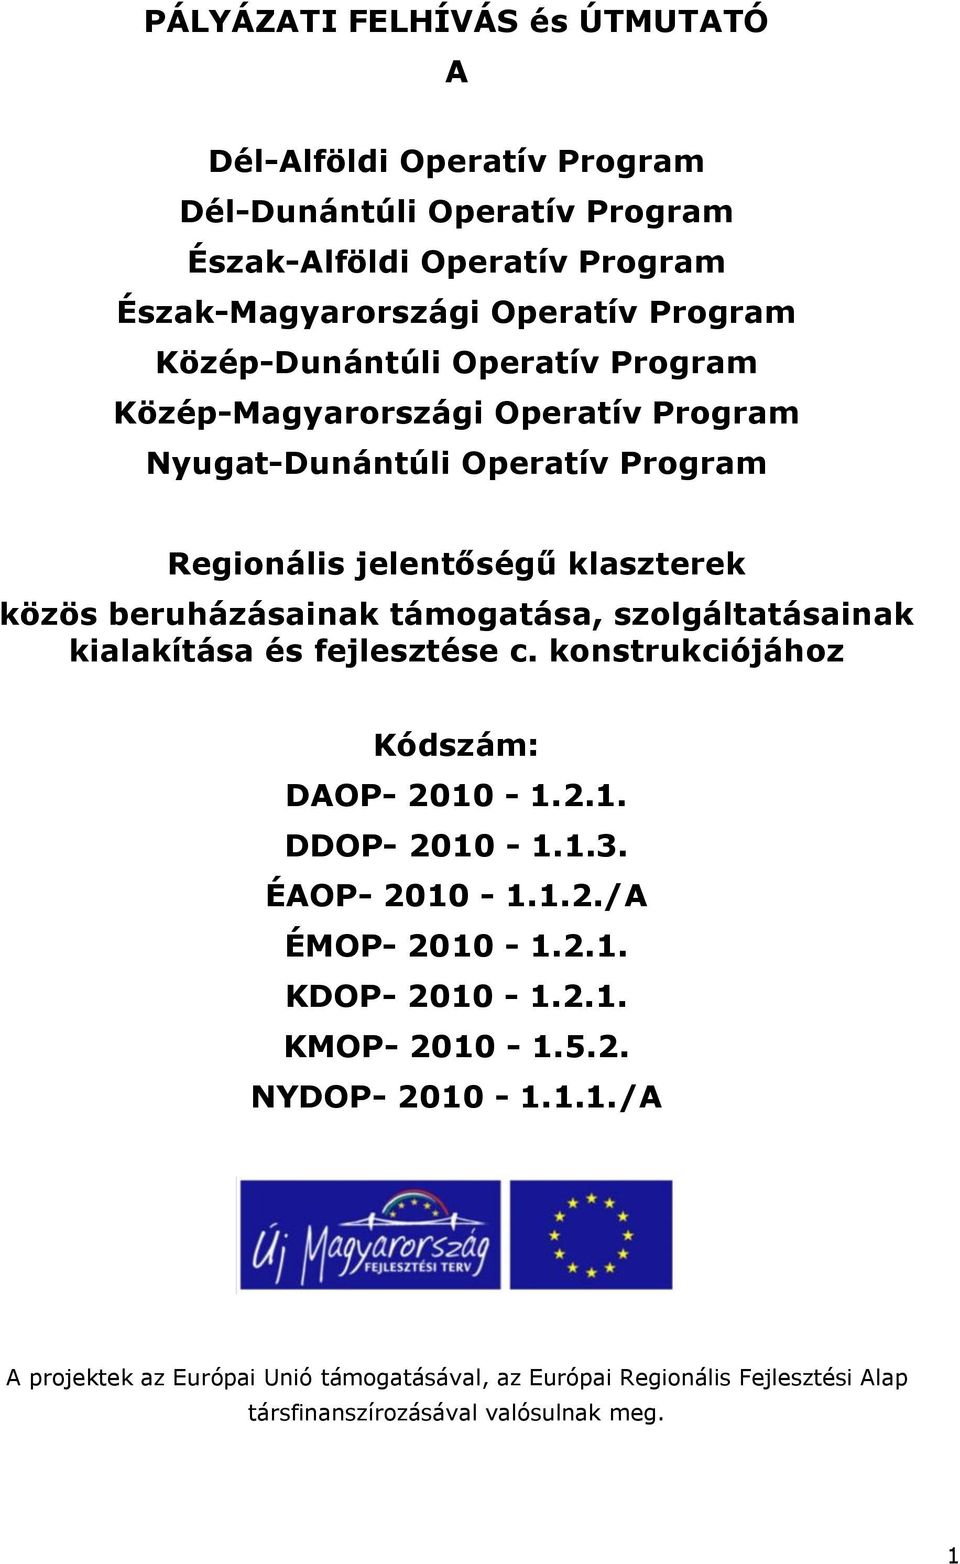 támogatása, szolgáltatásainak kialakítása és fejlesztése c. konstrukciójához Kódszám: DAOP- 2010-1.2.1. DDOP- 2010-1.1.3. ÉAOP- 2010-1.1.2./A ÉMOP- 2010-1.2.1. KDOP- 2010-1.